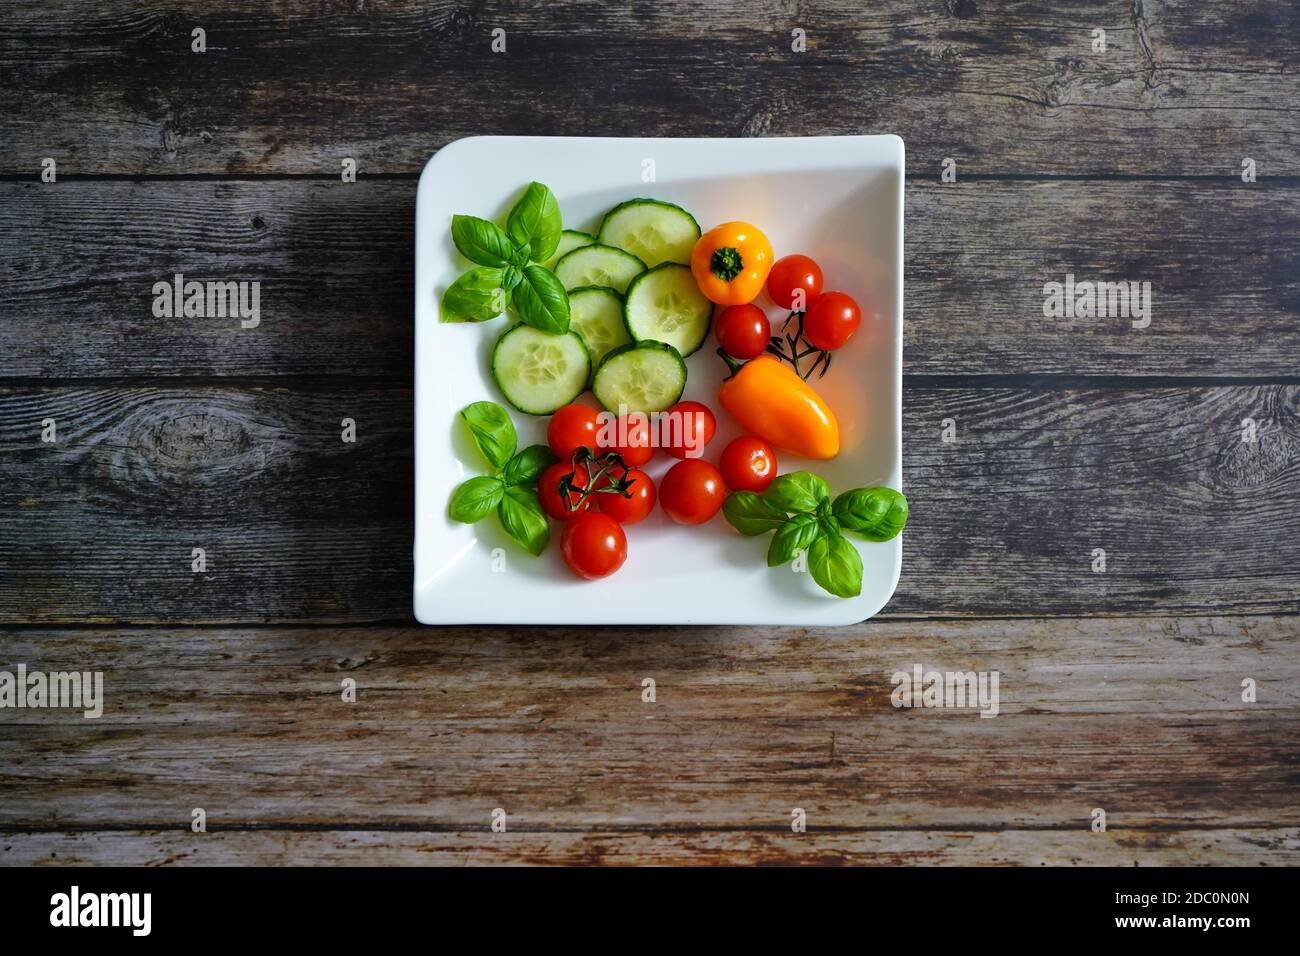 Frische Zutaten für einen gesunden Salat auf einem weißen quadratischen Teller: Tomaten, Paprika, Zucchini und Basilikum. Dunkler Holzhintergrund. Stockfoto